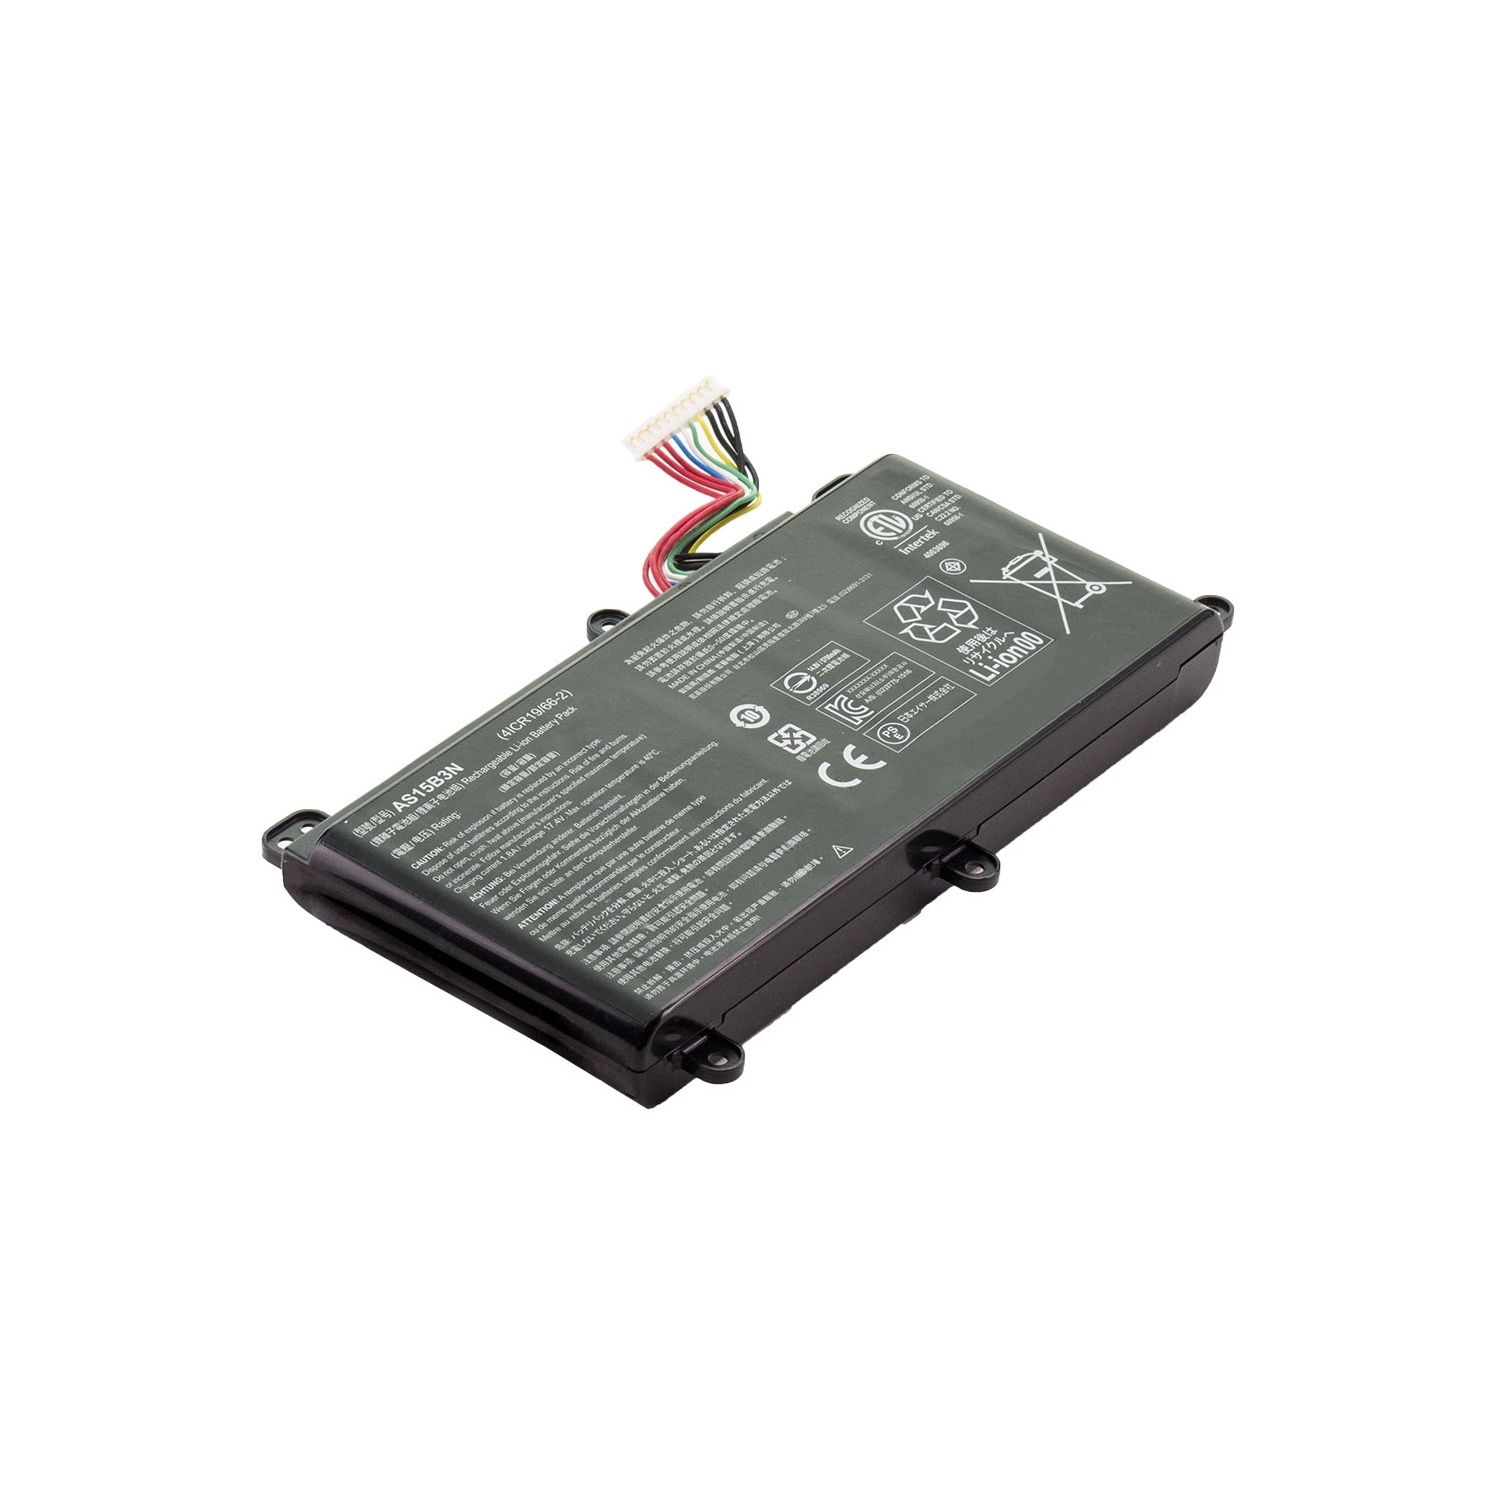 BATTDEPOT NEW Laptop Battery for Acer Predator 15 G9-592-74NV AS15B3N KT.00803.004 KT.00803.005